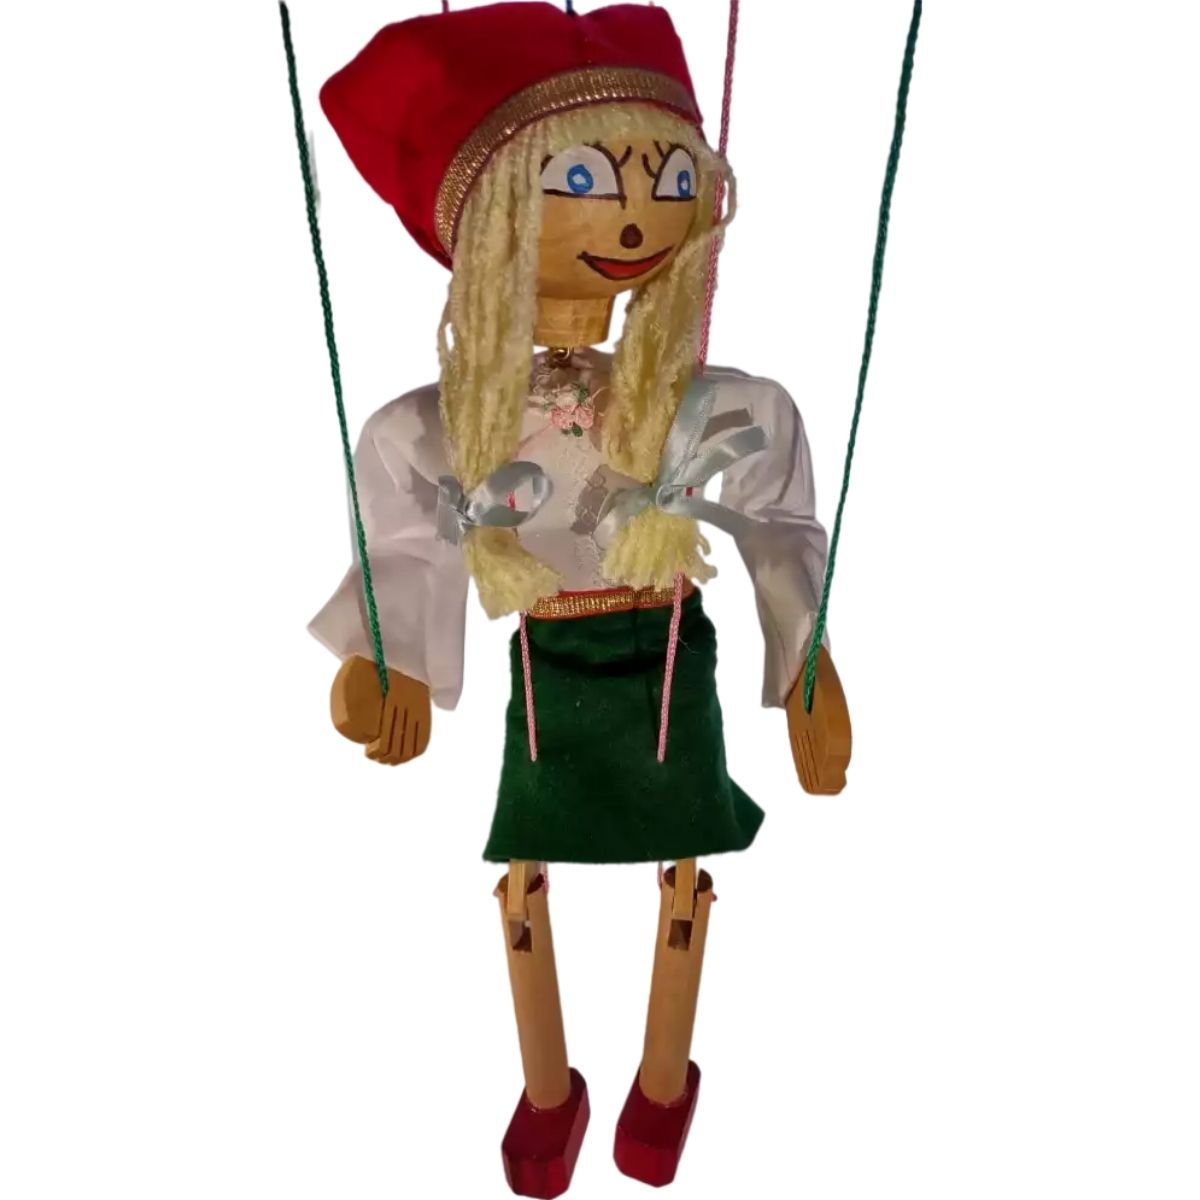 Goldilocks Marionette Wooden Puppet